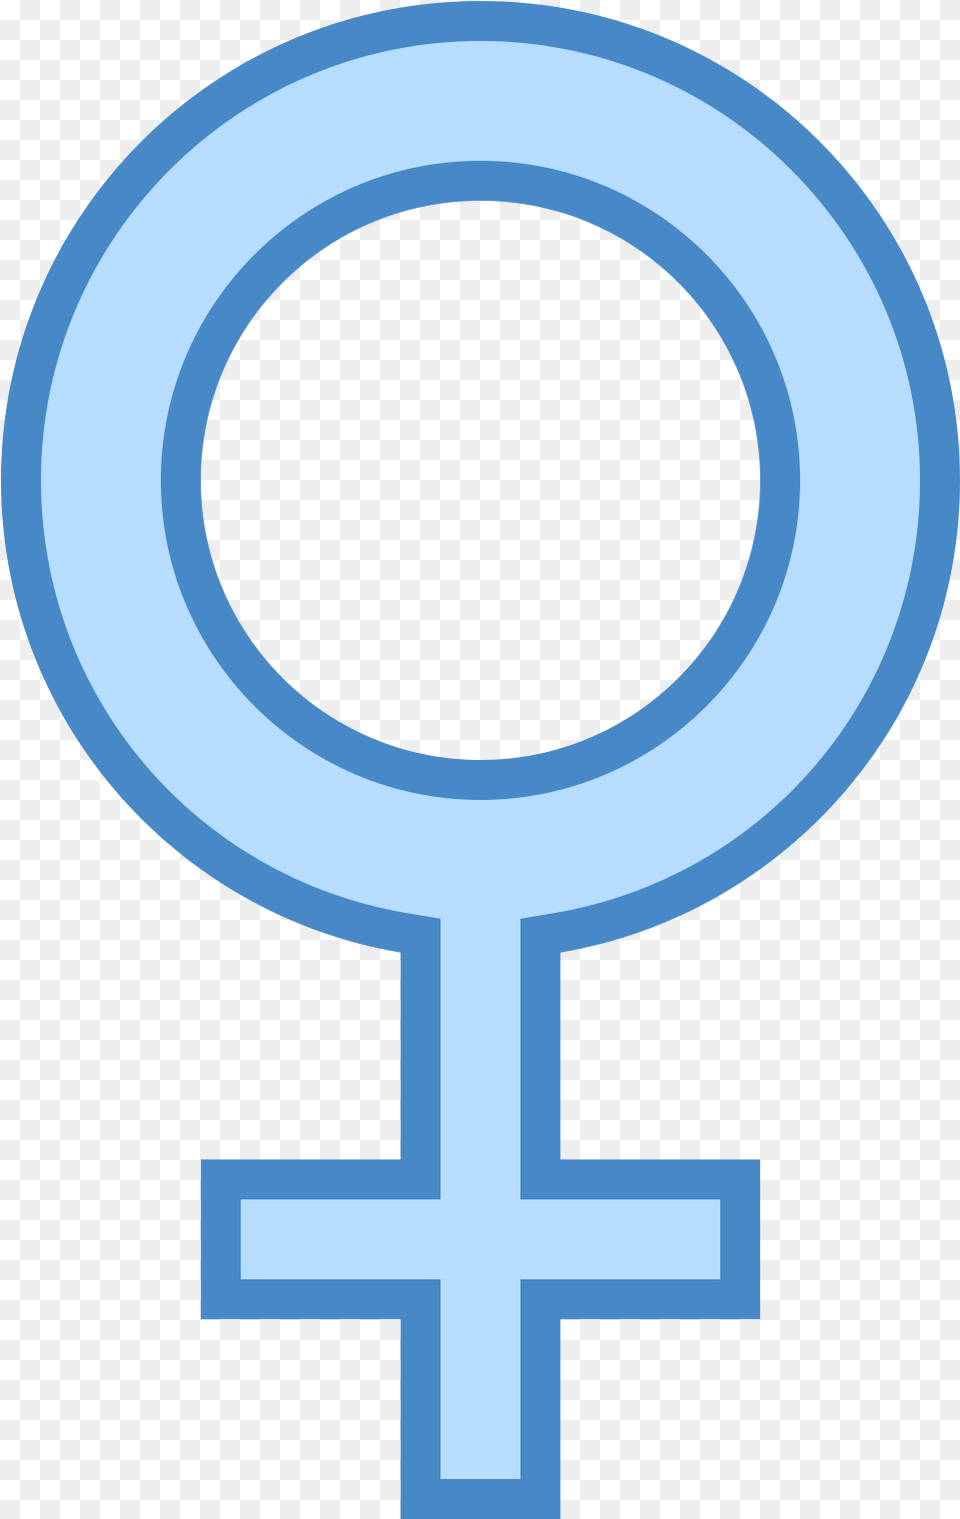 Circle With Cross At Bottom, Key, Symbol Png Image